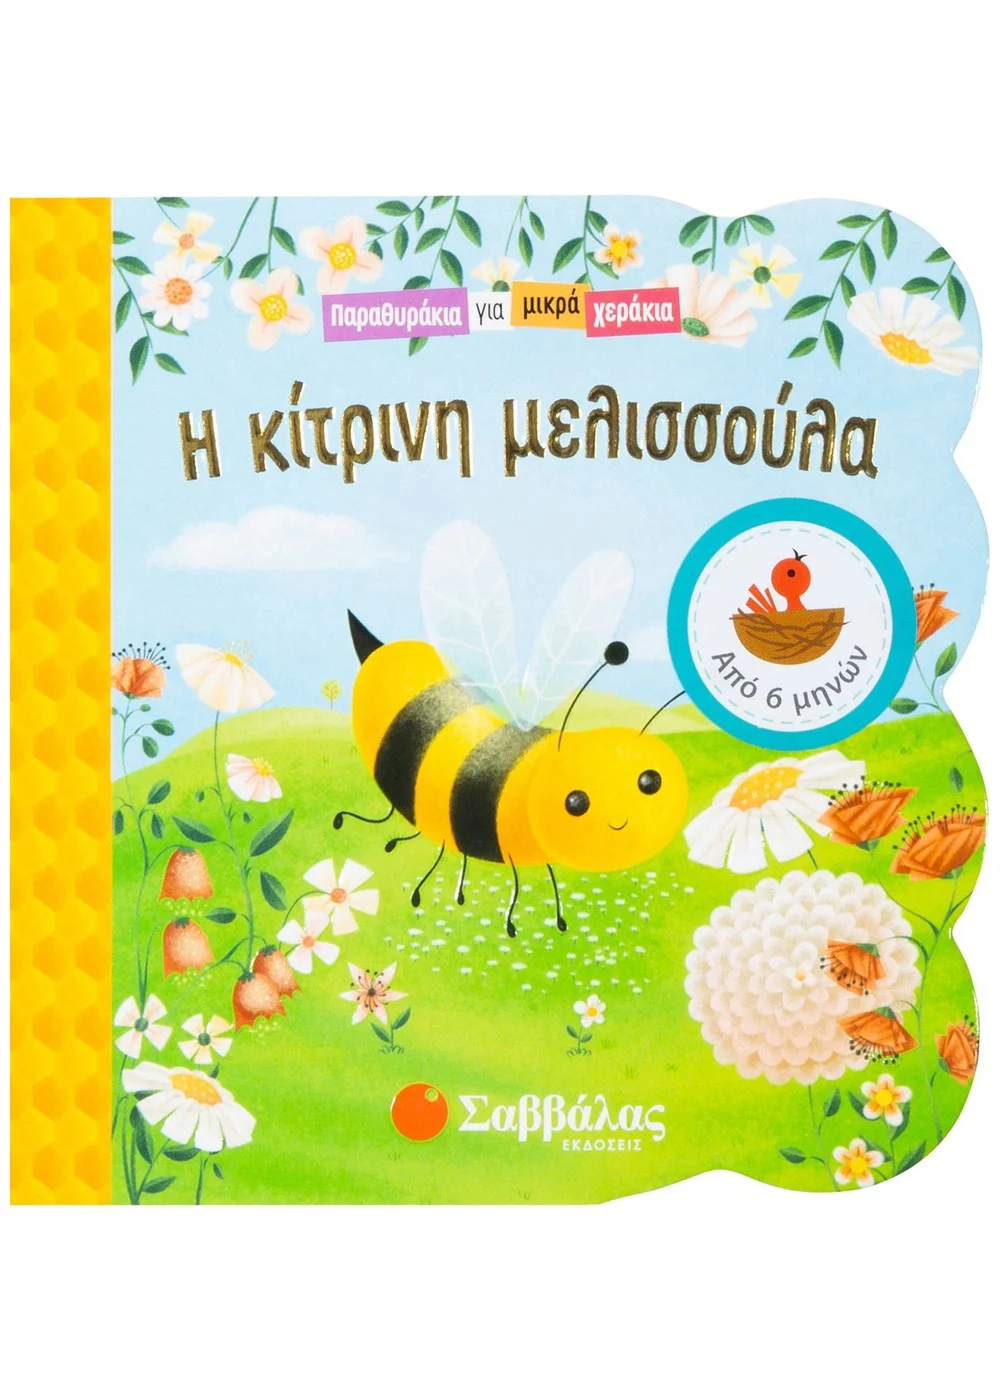 Παραθυράκια Για Μικρά Χεράκια - Η Κίτρινη Μελισσούλα